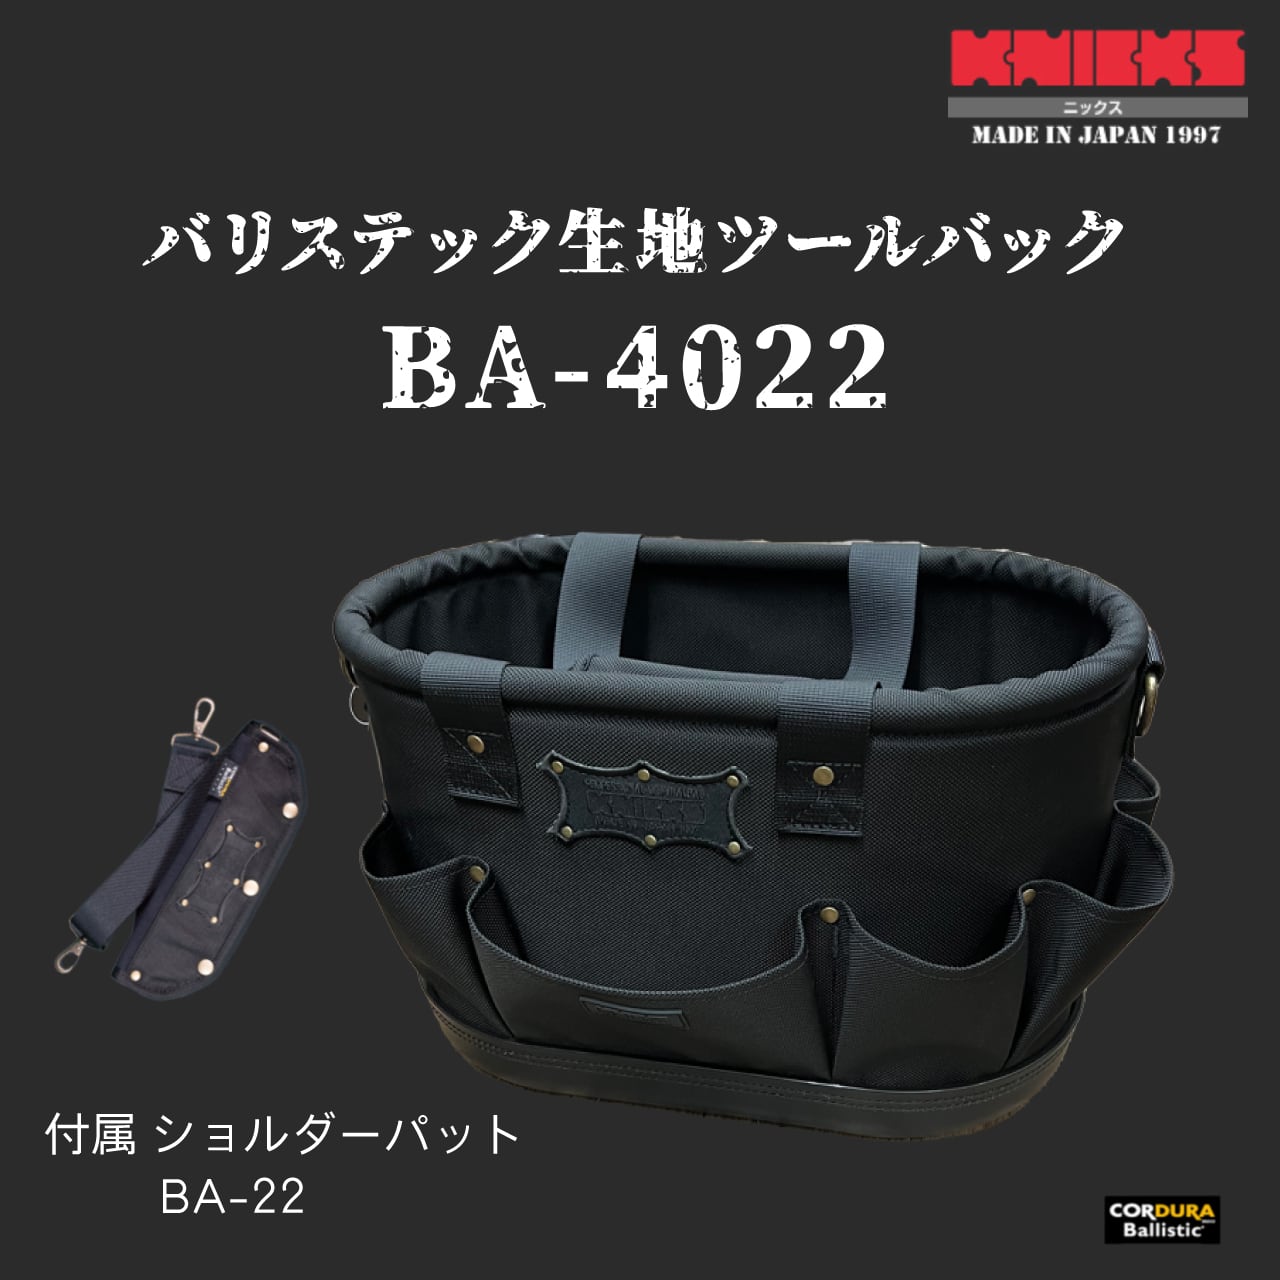 アウトレット☆送料無料 ニックスバリスティック 工具袋BA-4022